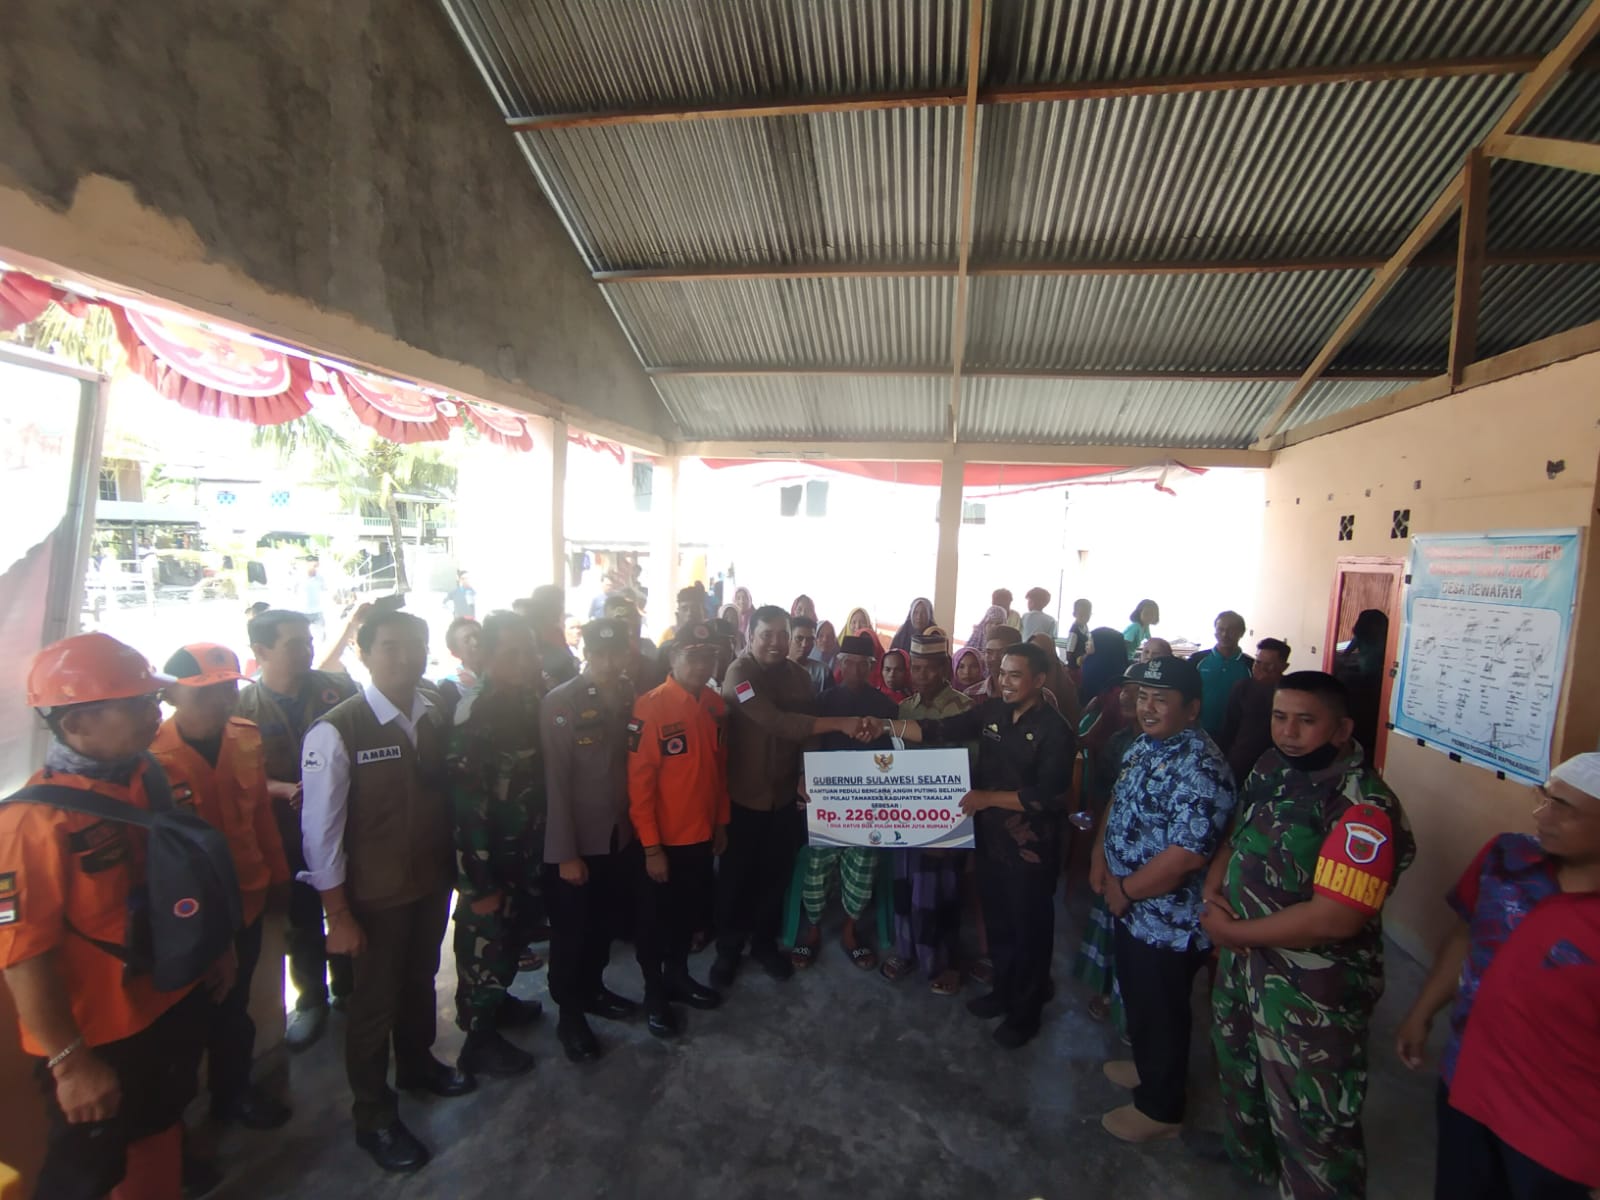 Pemprov Sulsel Salurkan Bantuan Rp 226 Juta untuk Korban Puting Beliung di Takalar